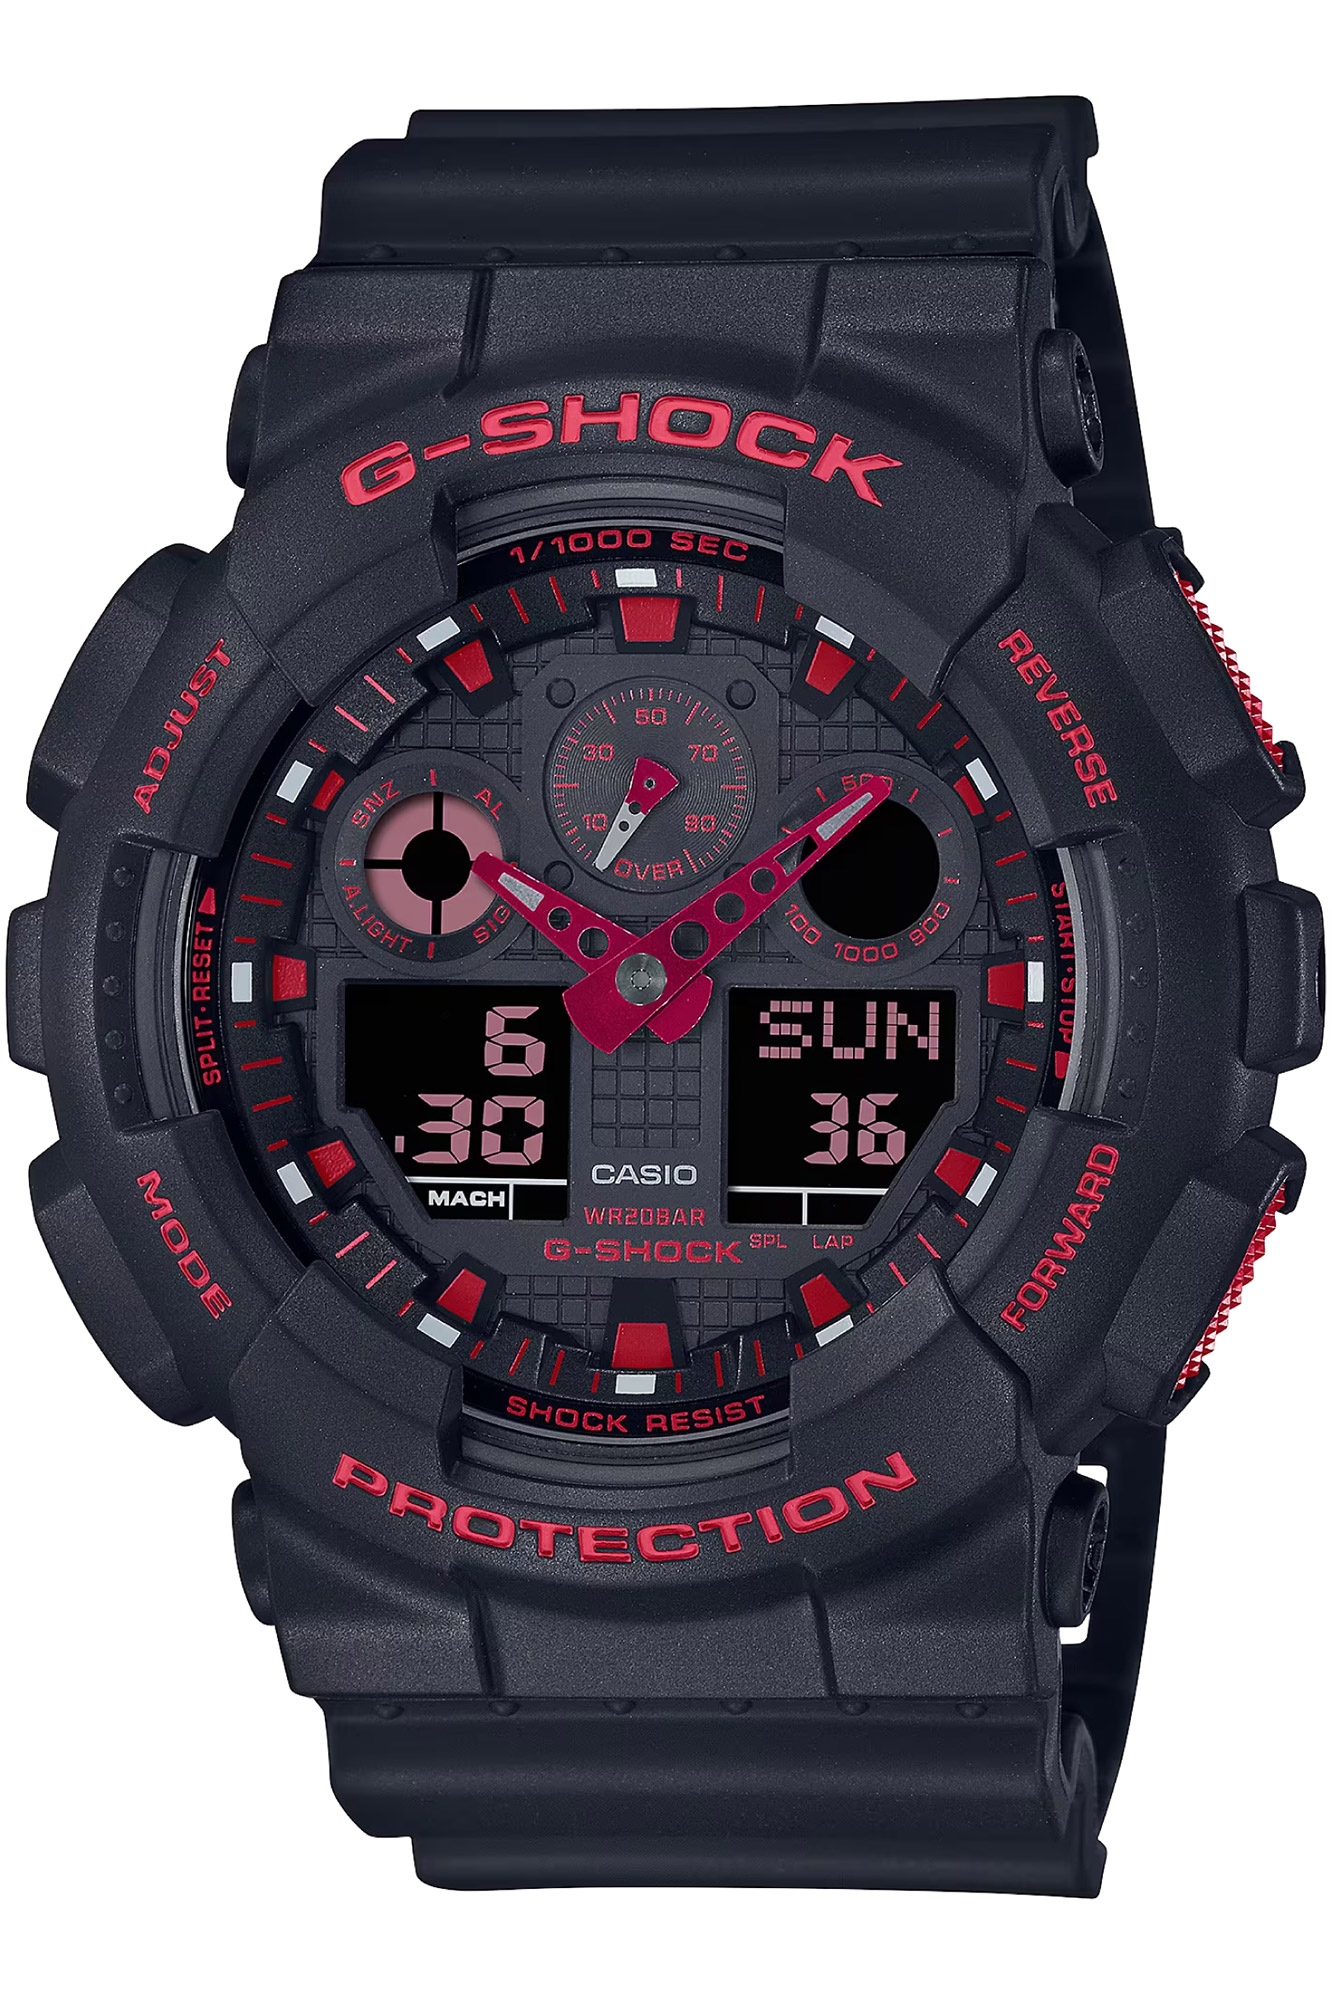 Montre CASIO G-Shock ga-100bnr-1aer